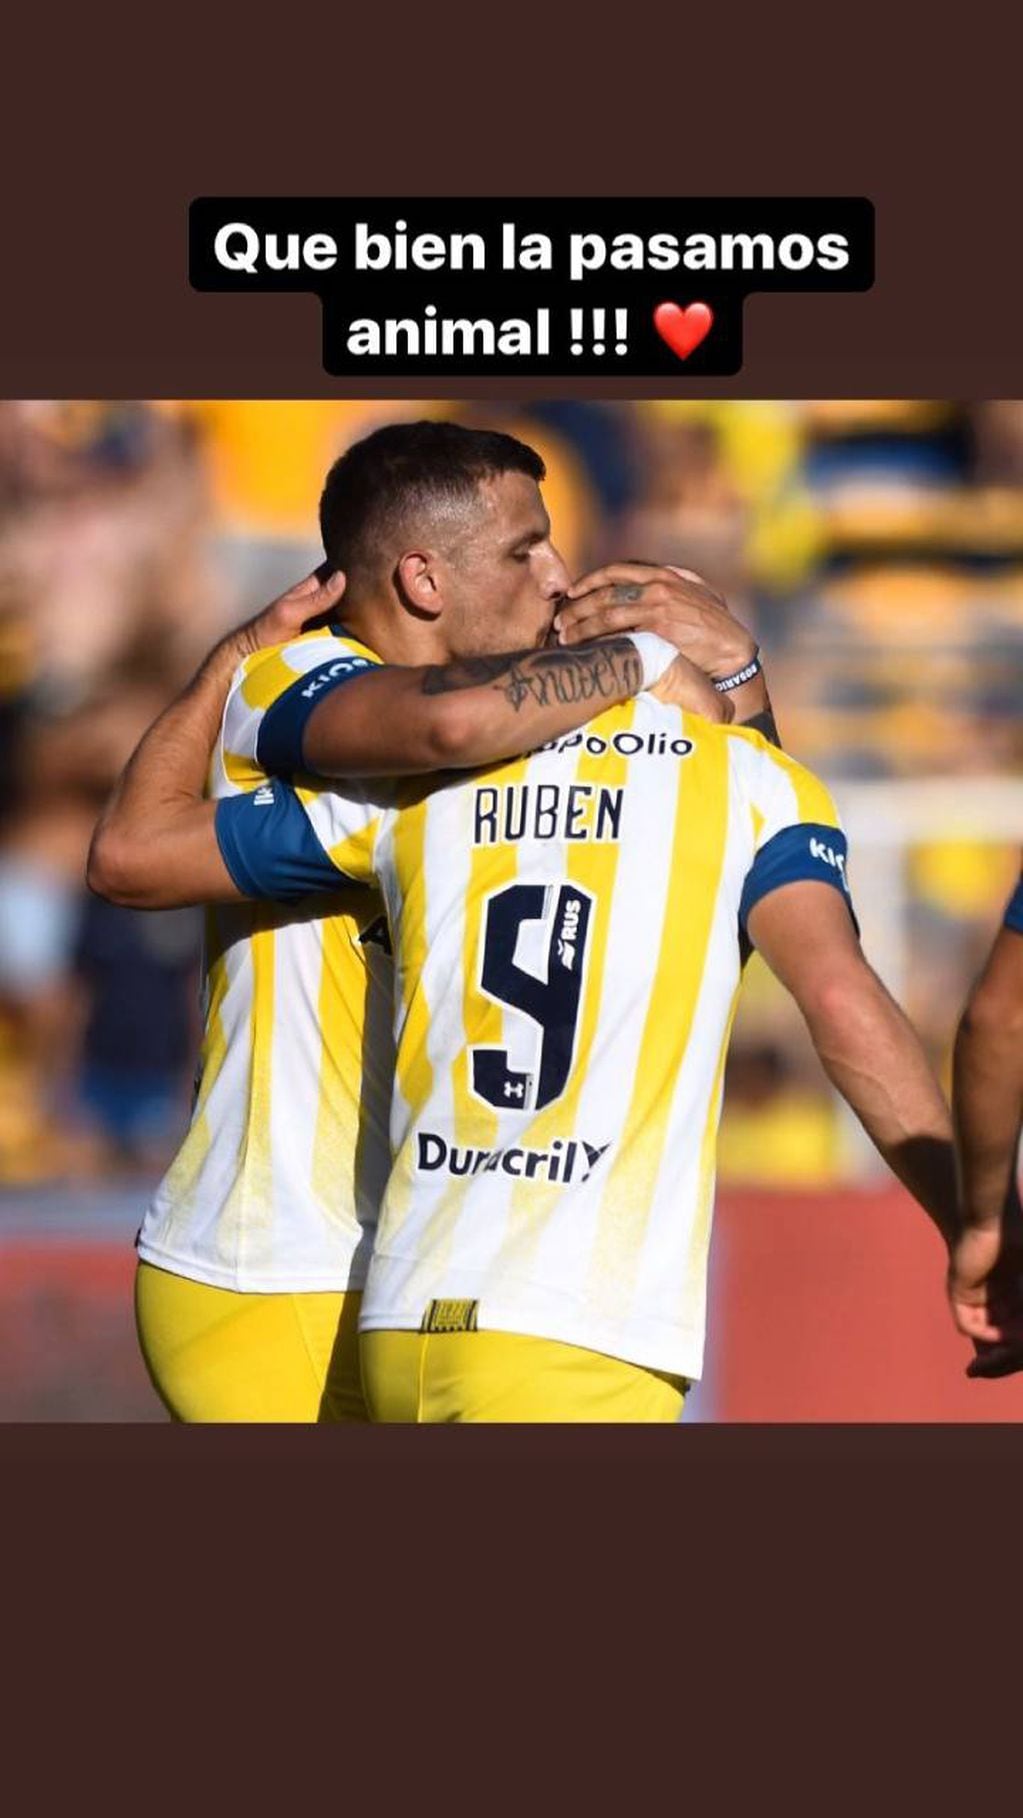 El futbolista de 33 años publicó una foto en Instagram para recordar sus buenos tiempos en cancha junto a Ruben.